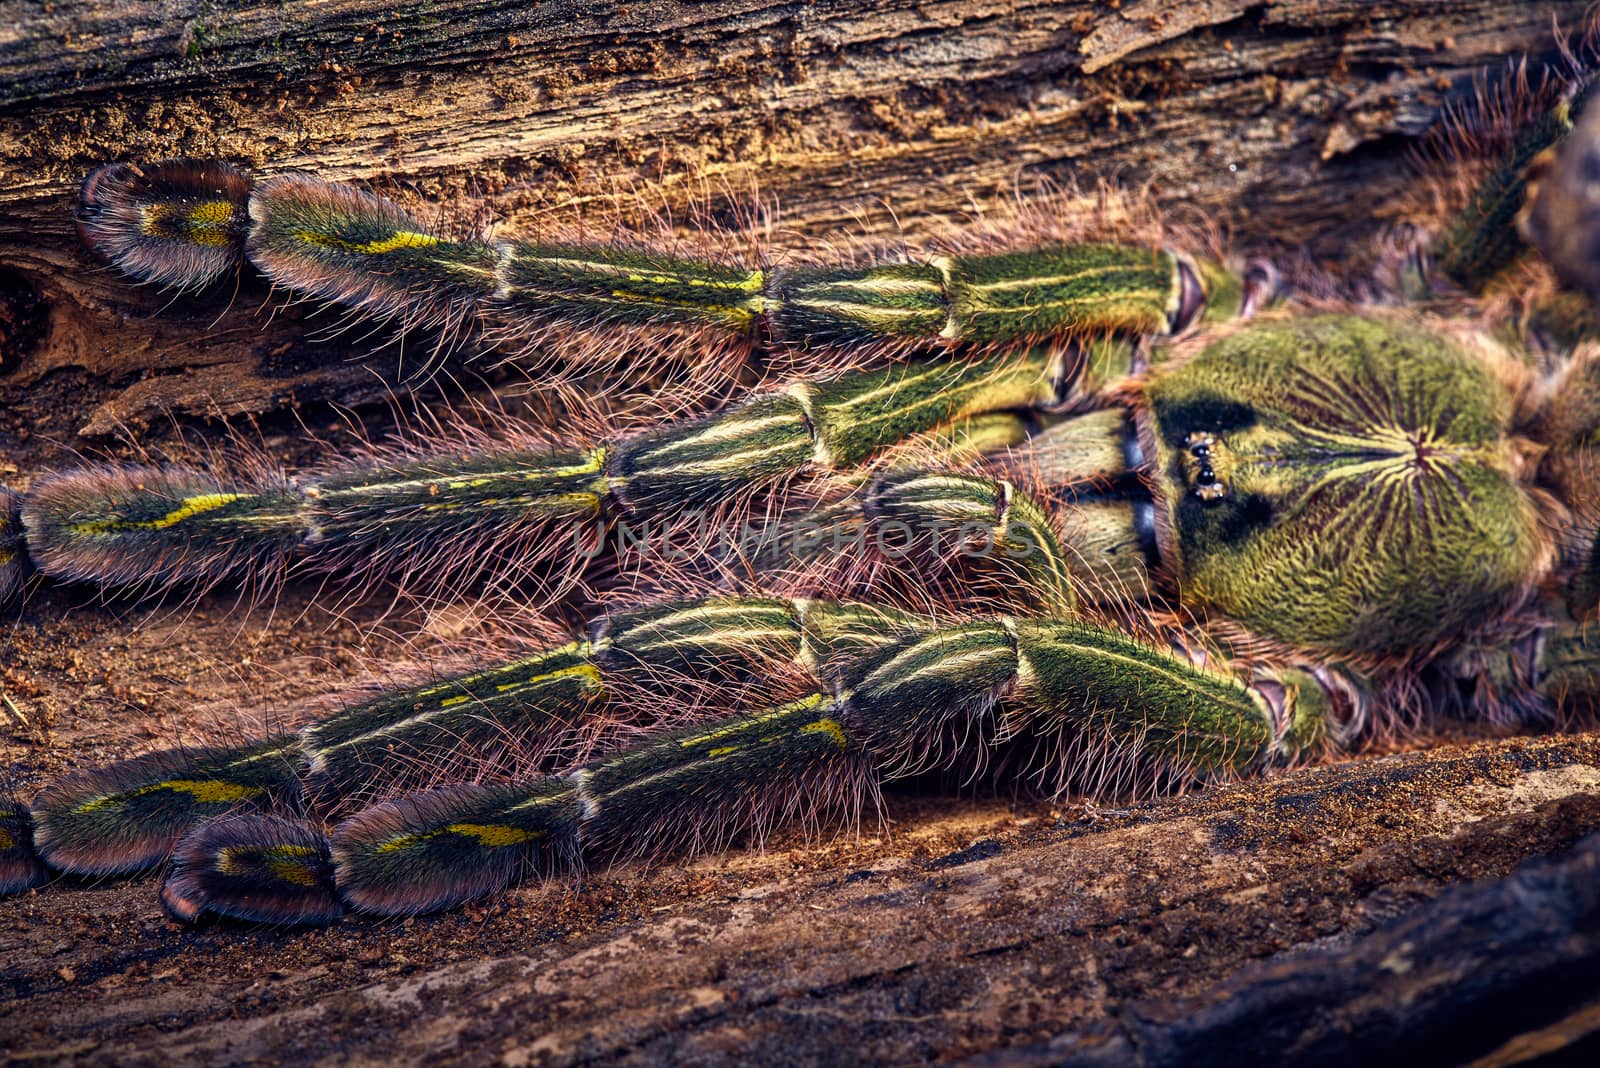 tarantula Poecilotheria rufilata by master1305